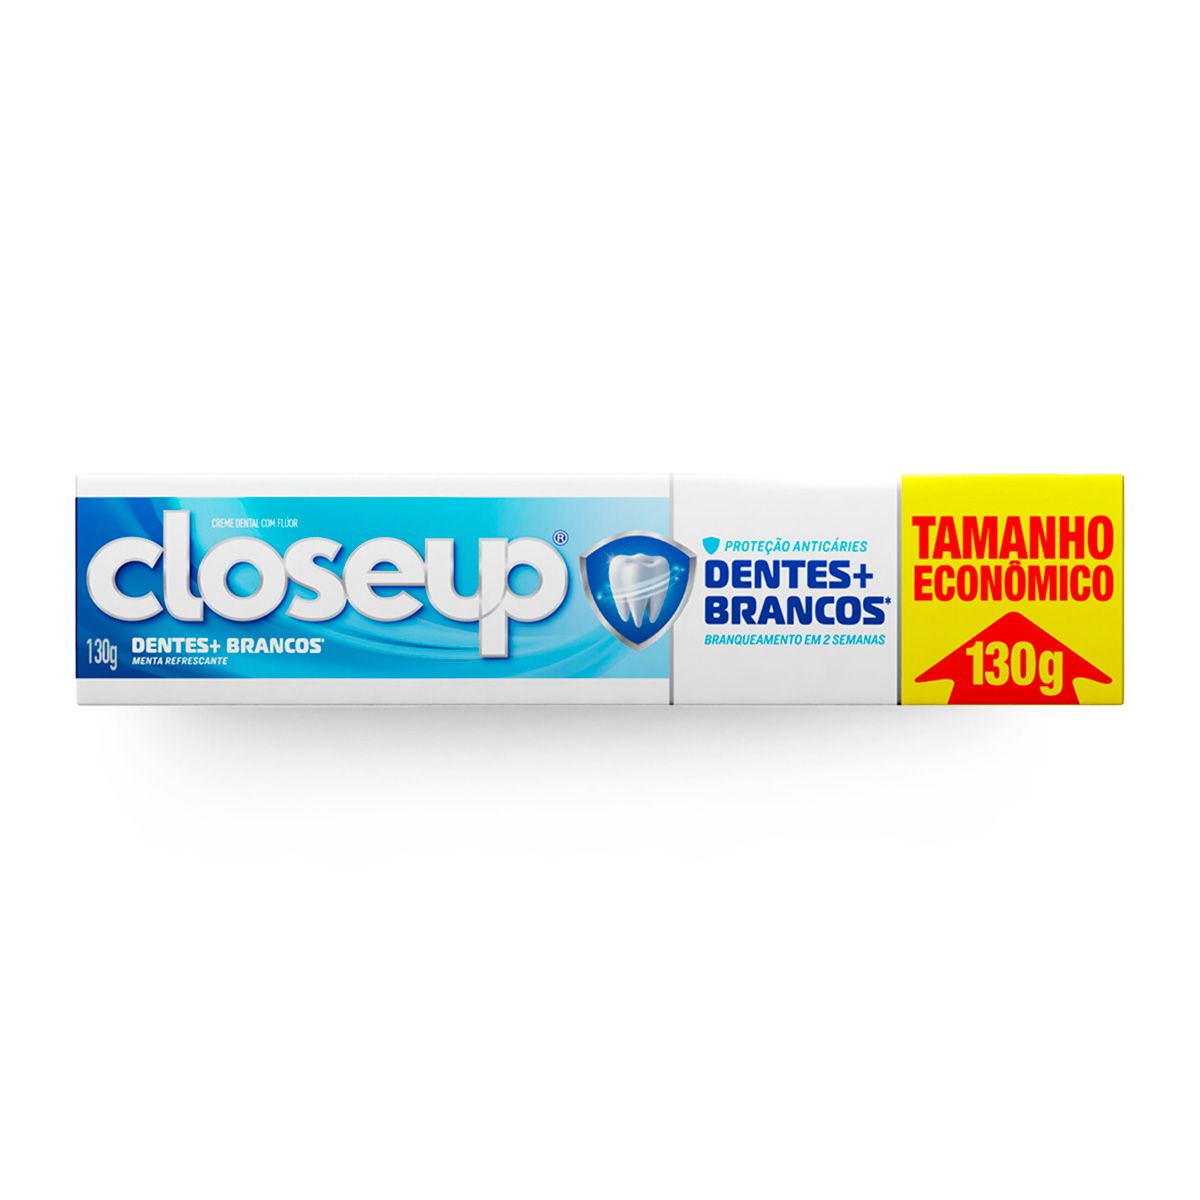 Creme Dental Close Up Dentes + Brancos 130g Tamanho Econômico